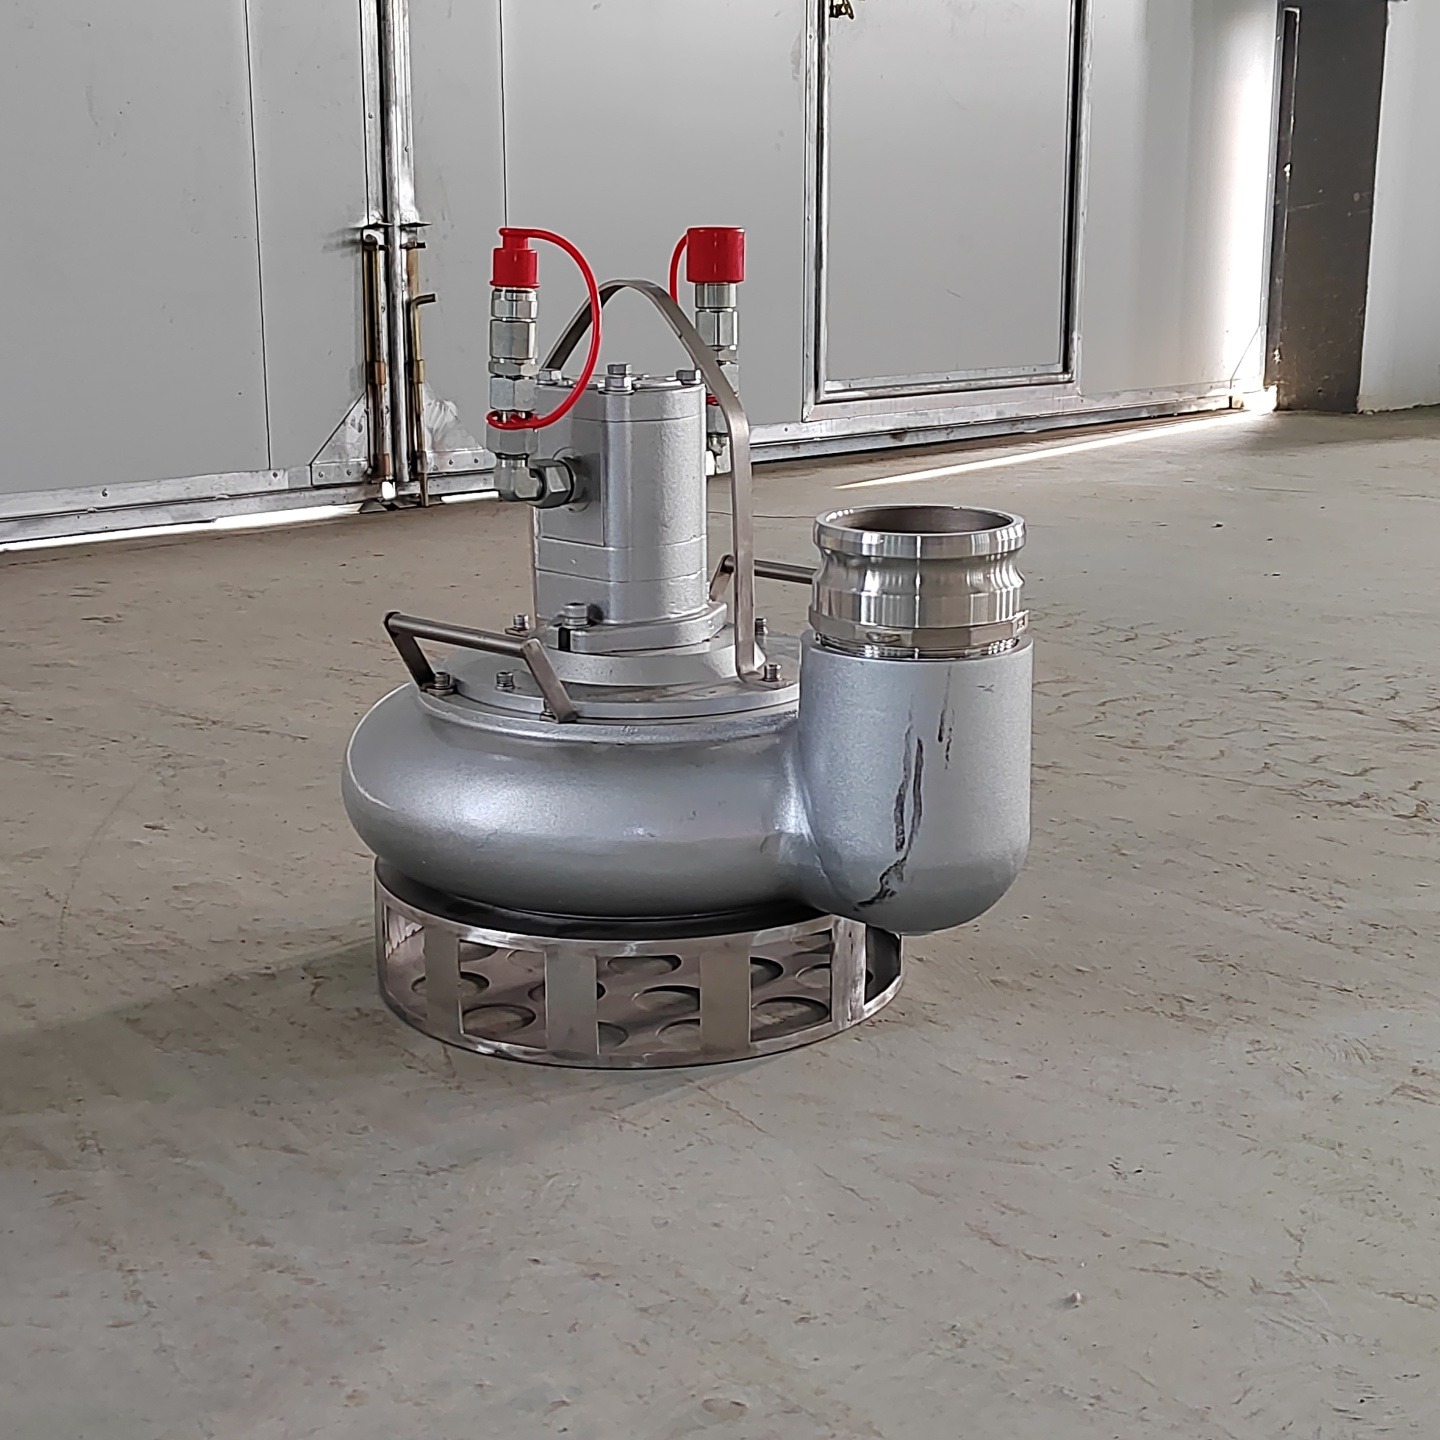 渣浆泵 便携式排水泵 排水抢险泵 排涝泵 排水泵 汉能 YZJ系列  厂家送货